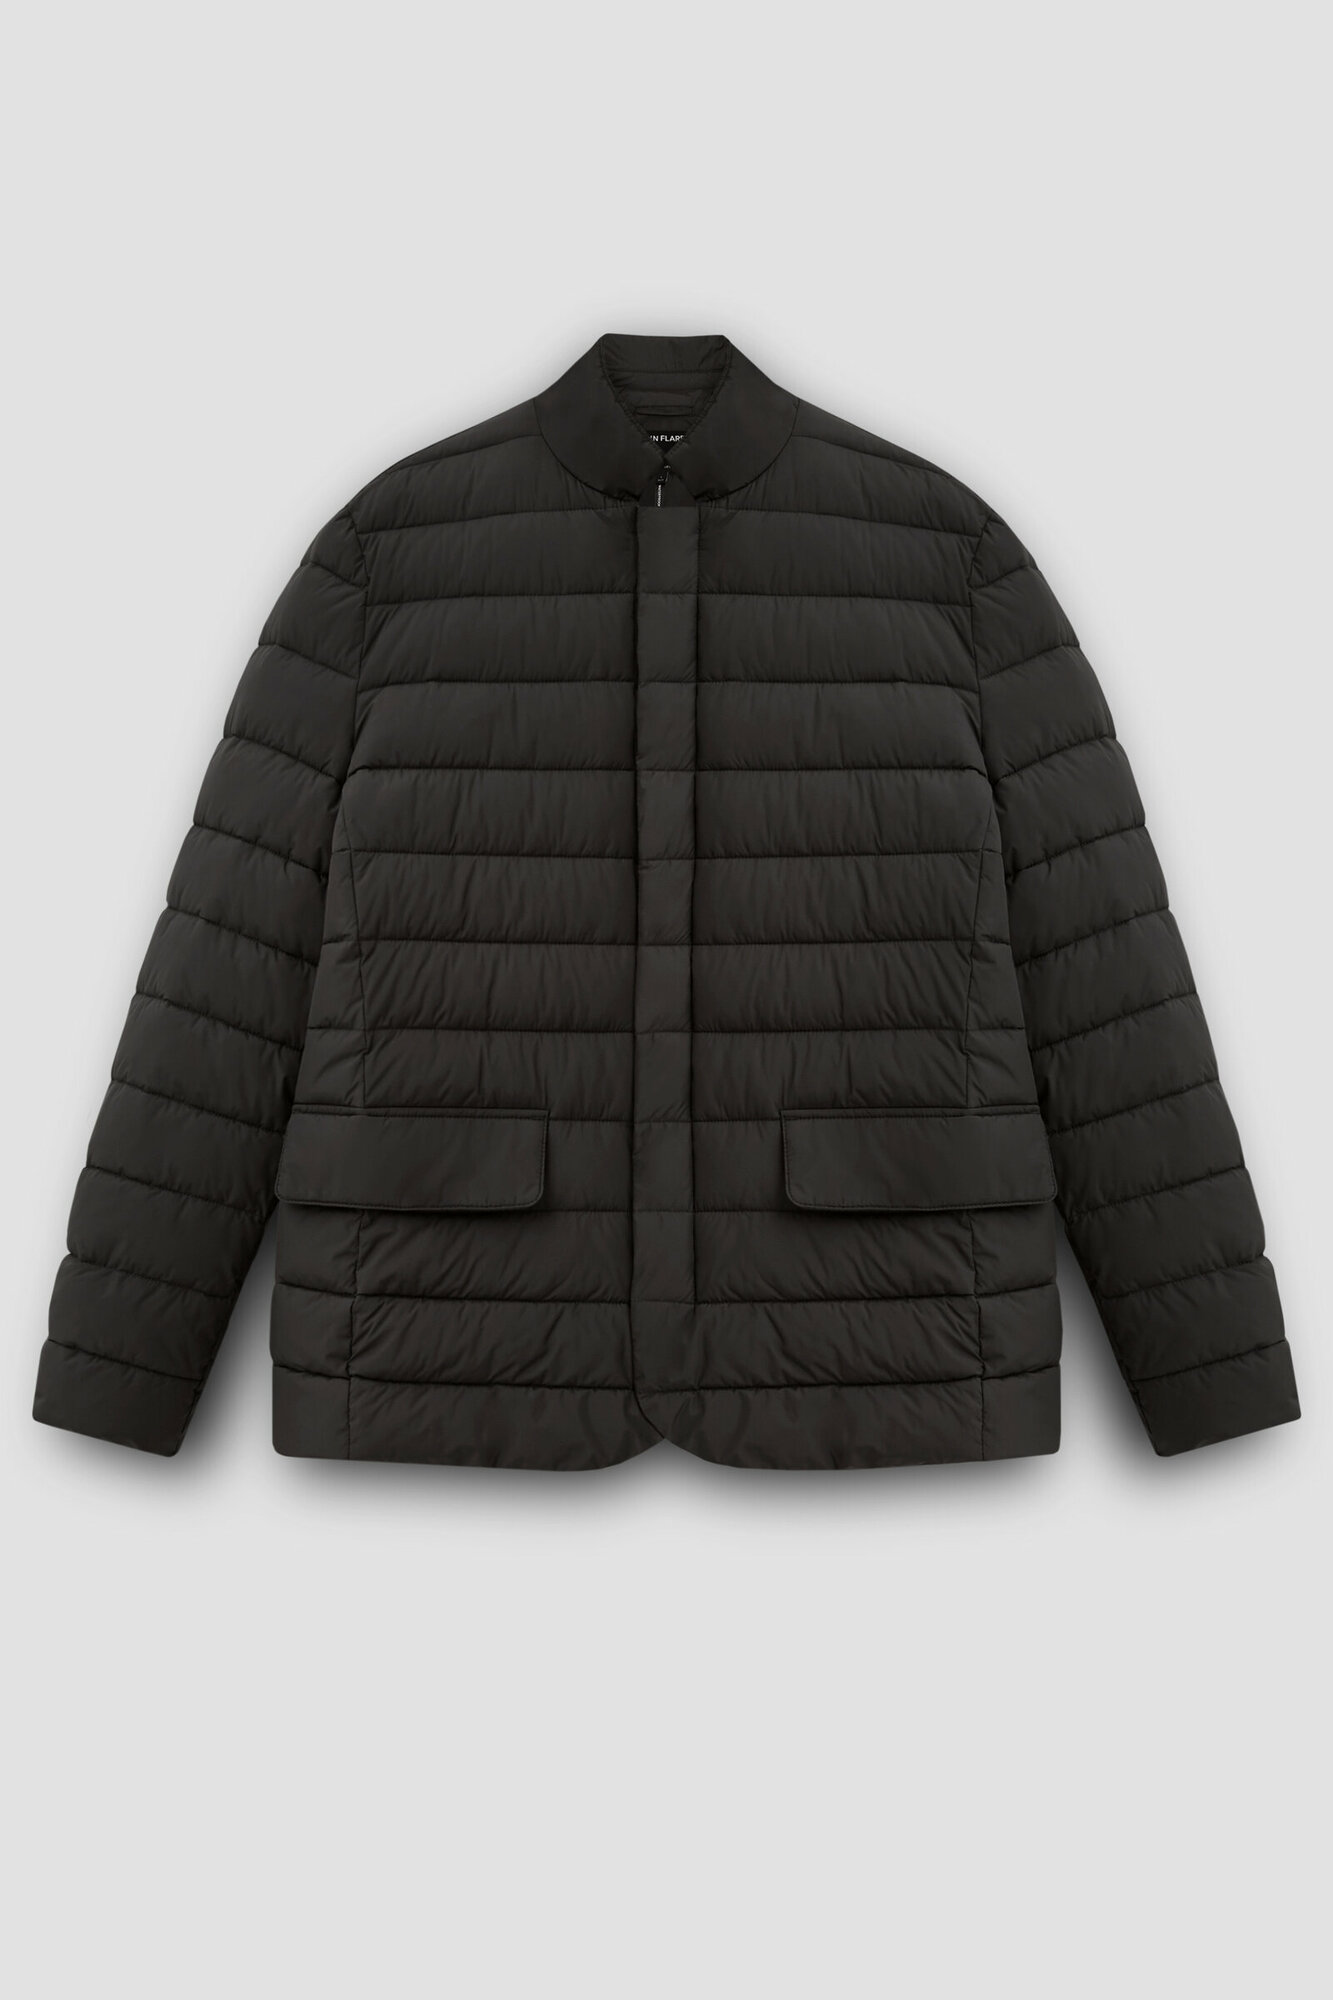 Куртка FINN FLARE, размер L(182-104-94), черный